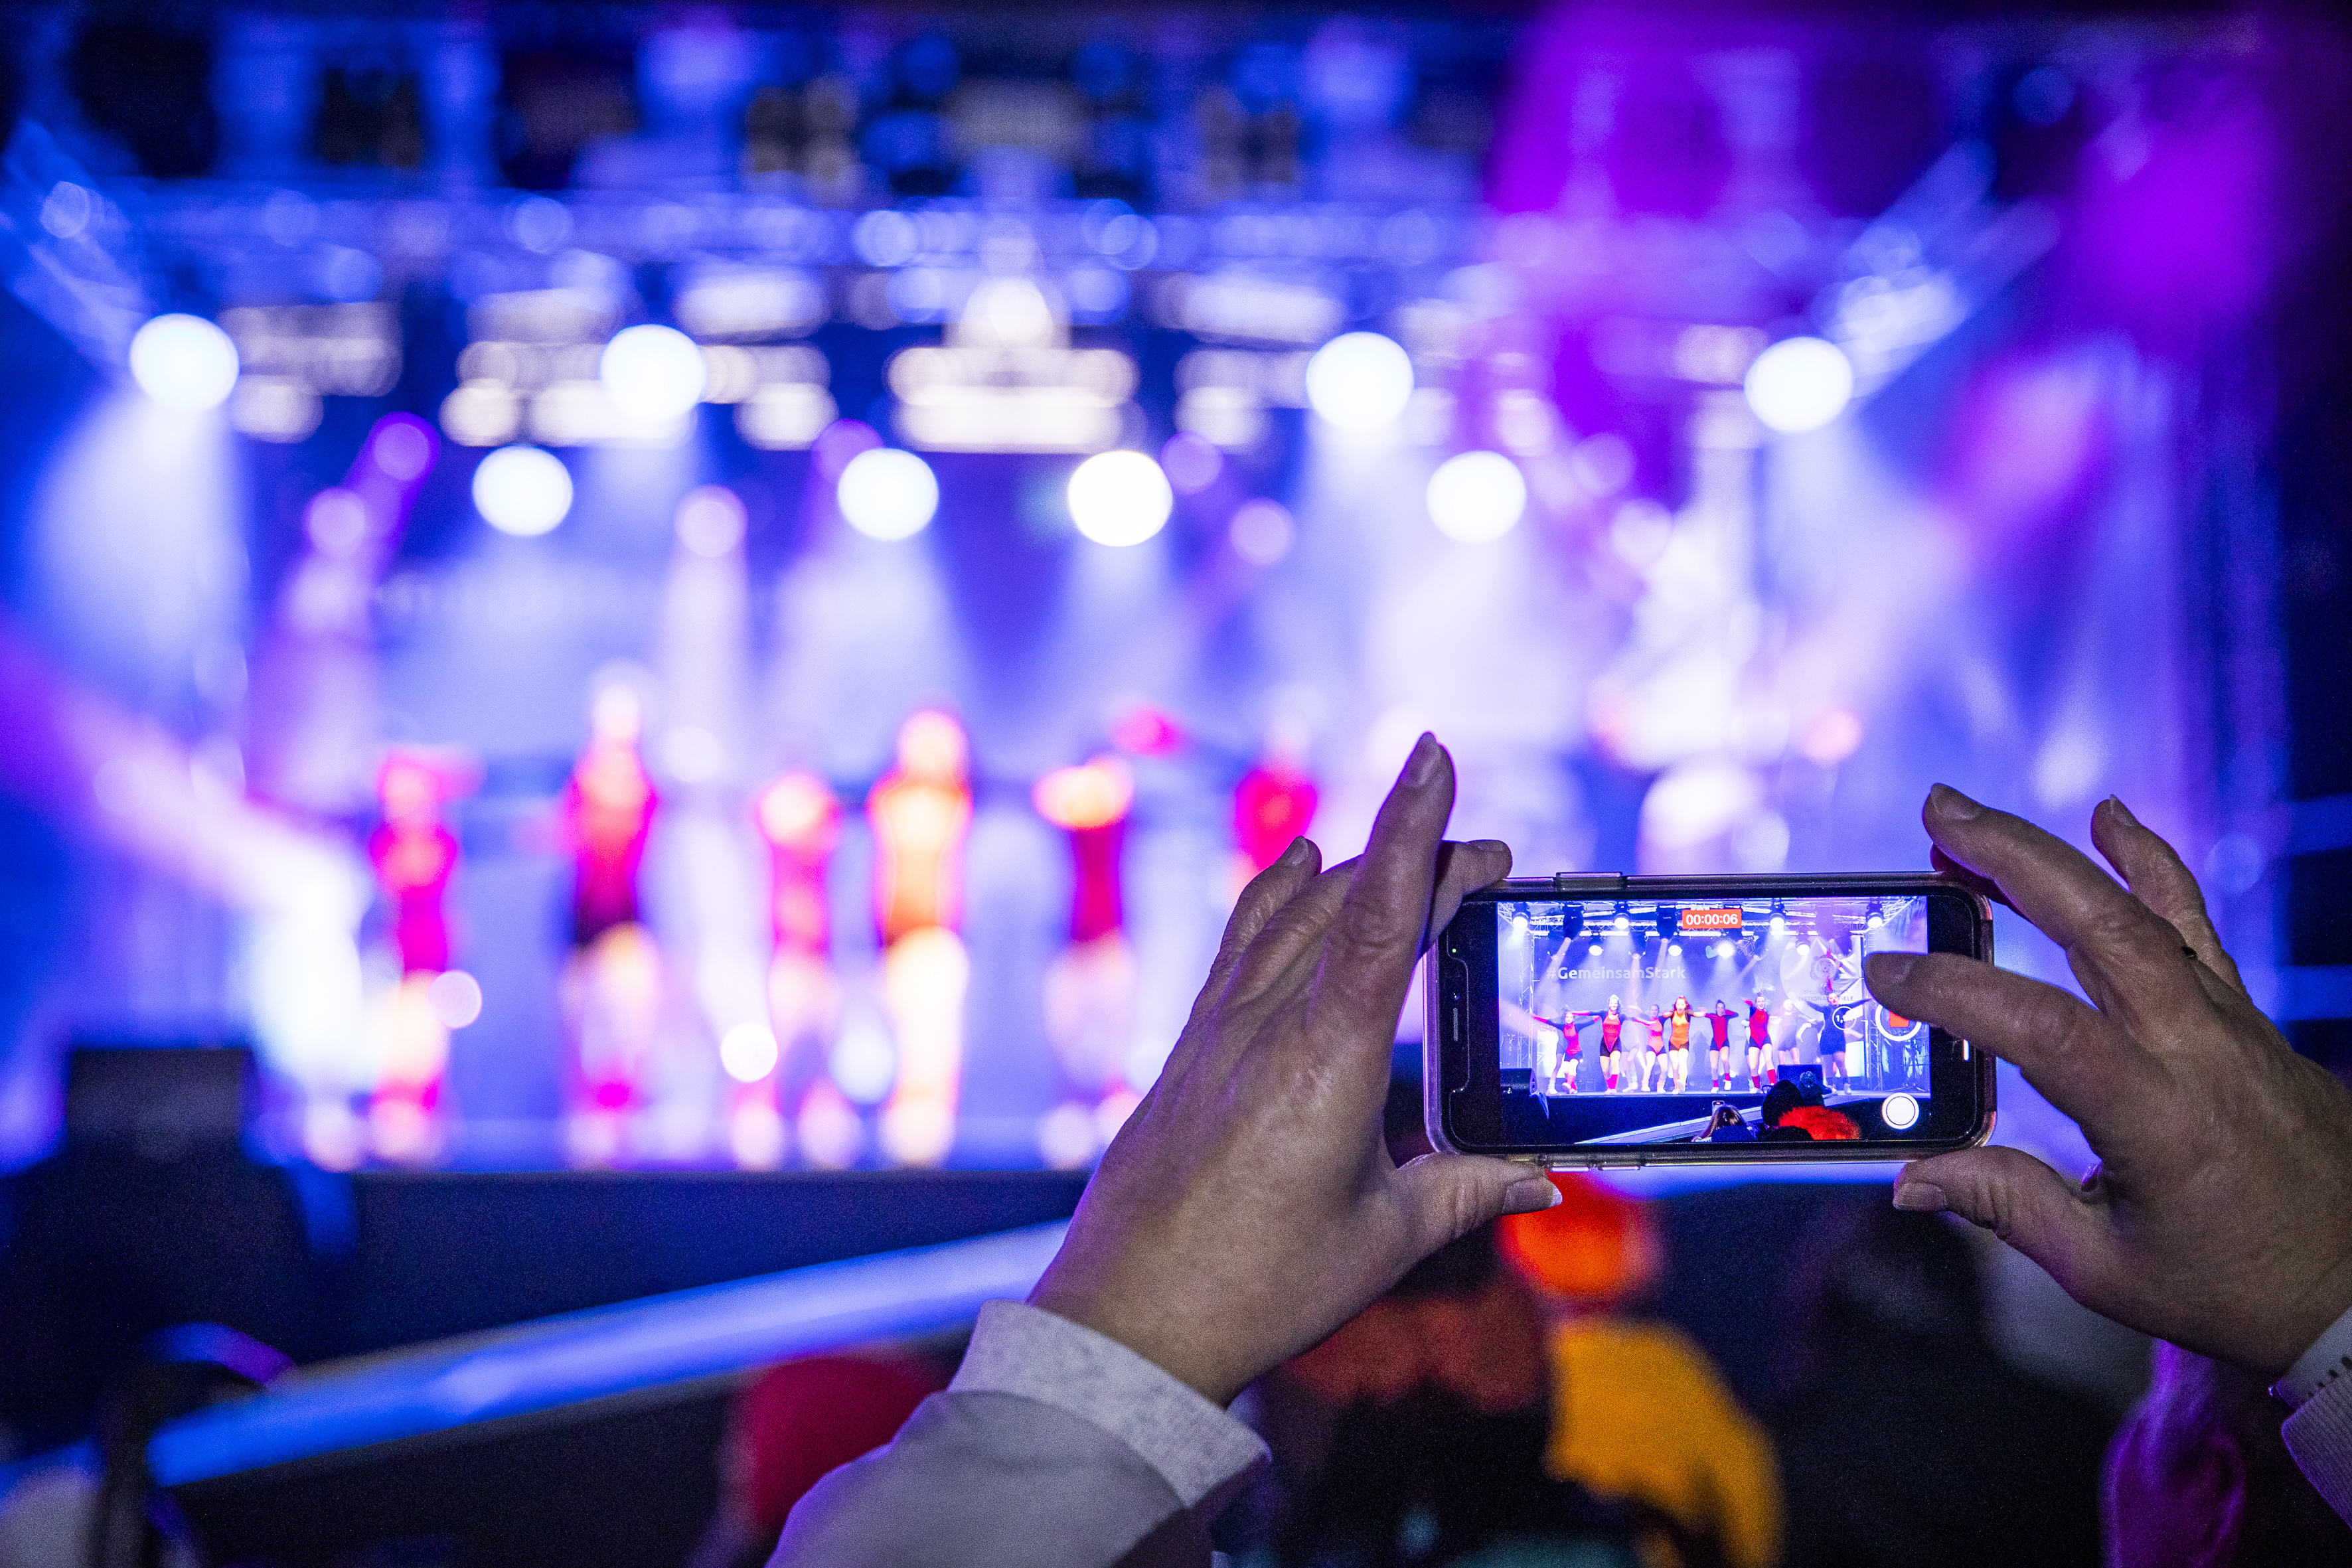 Im Hintergrund verschwommen Tänzerinnen und Tänzer auf der Bühne, im Vordergrund zwei Hände, die ein Handy halten, das filmt.